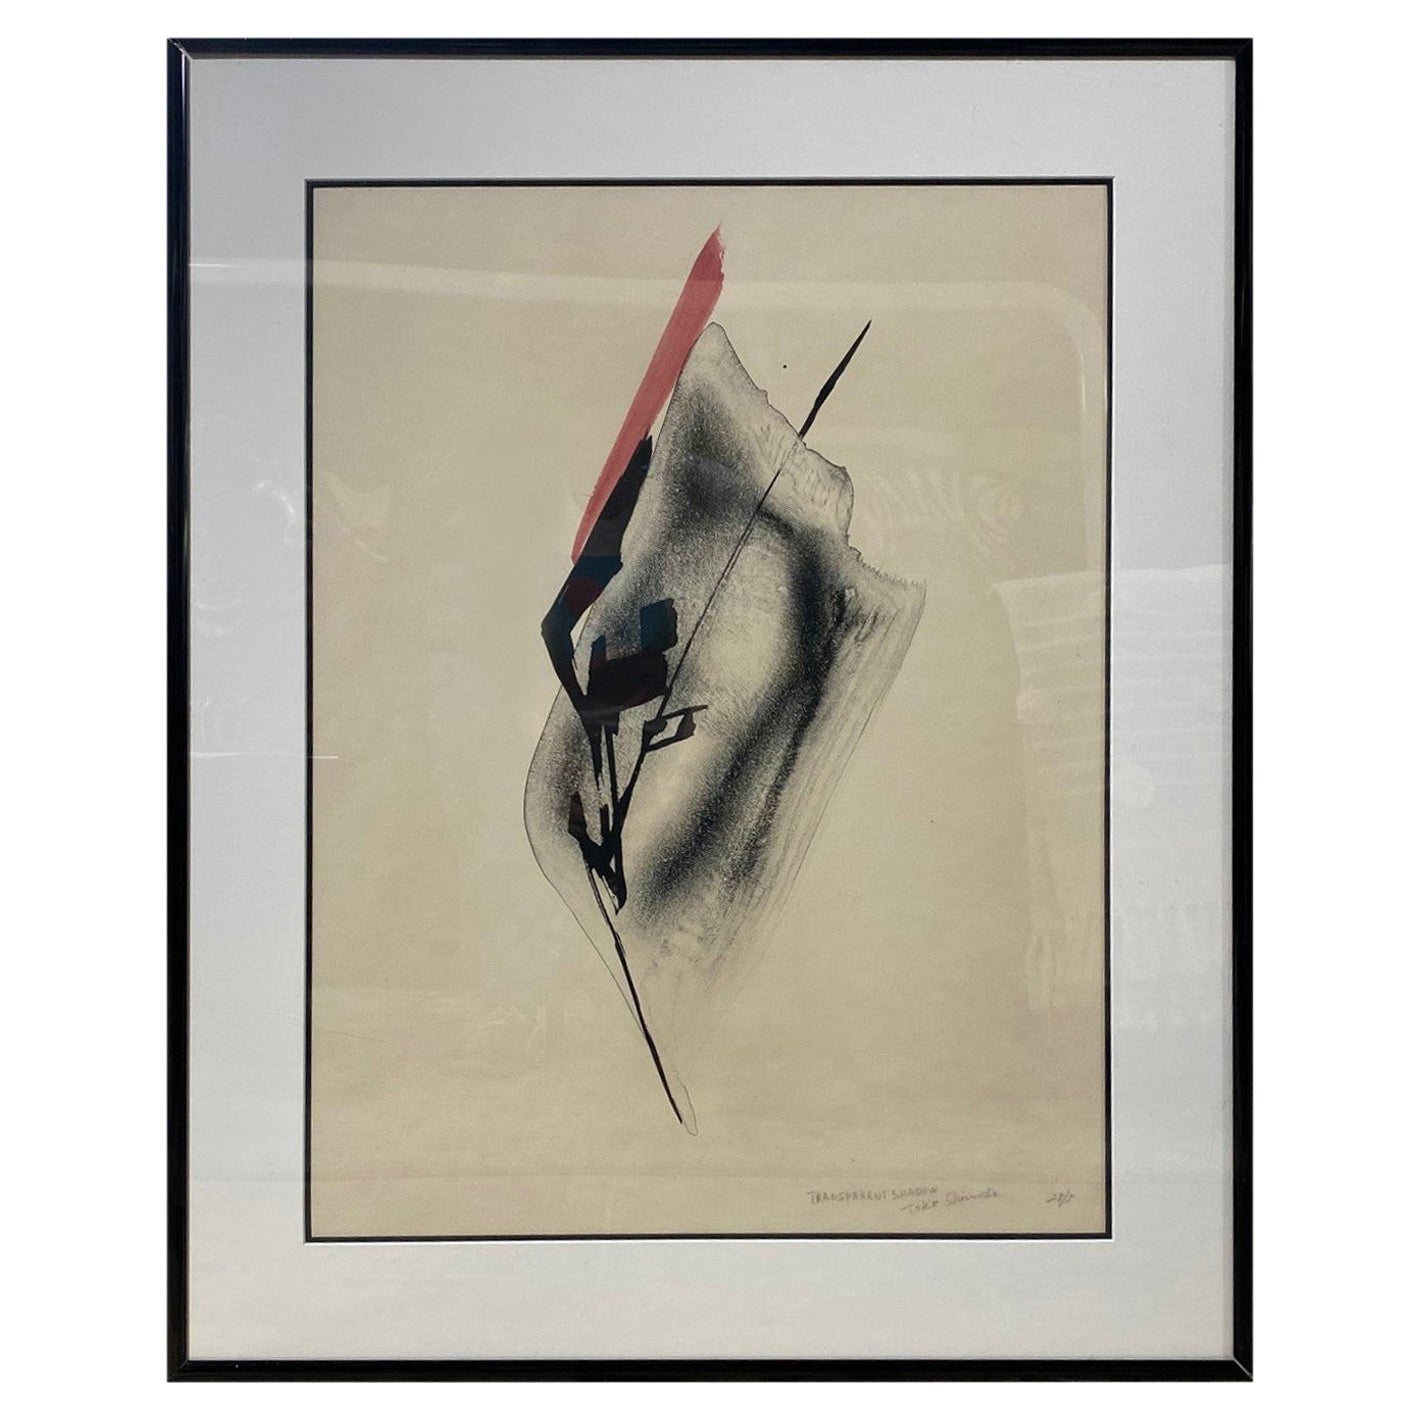 Toko Shinoda Signierte große japanische Lithographie „Transparentes Schatten“ in limitierter Auflage